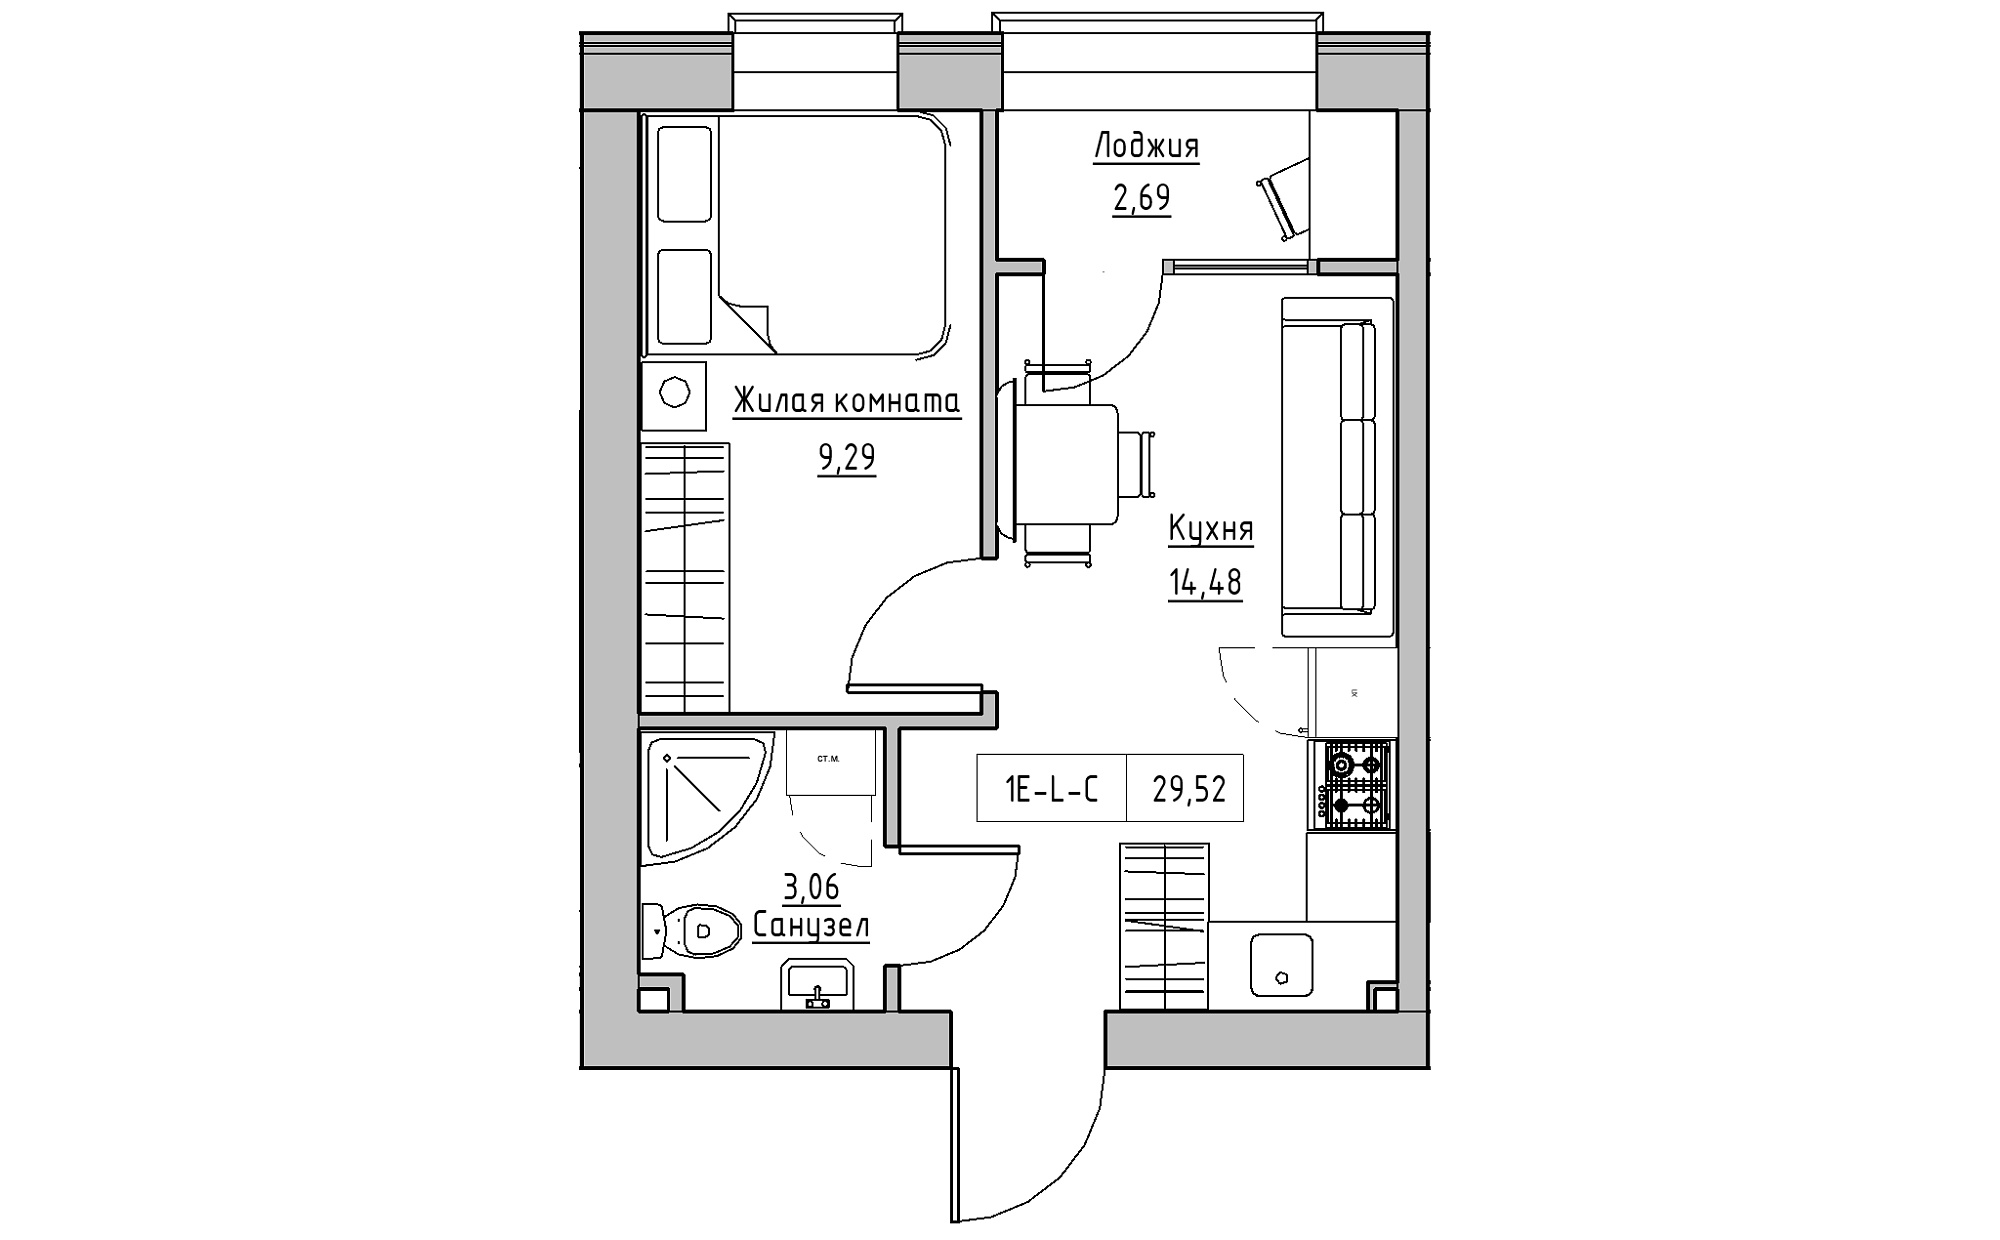 Планировка 1-к квартира площей 29.52м2, KS-022-02/0006.